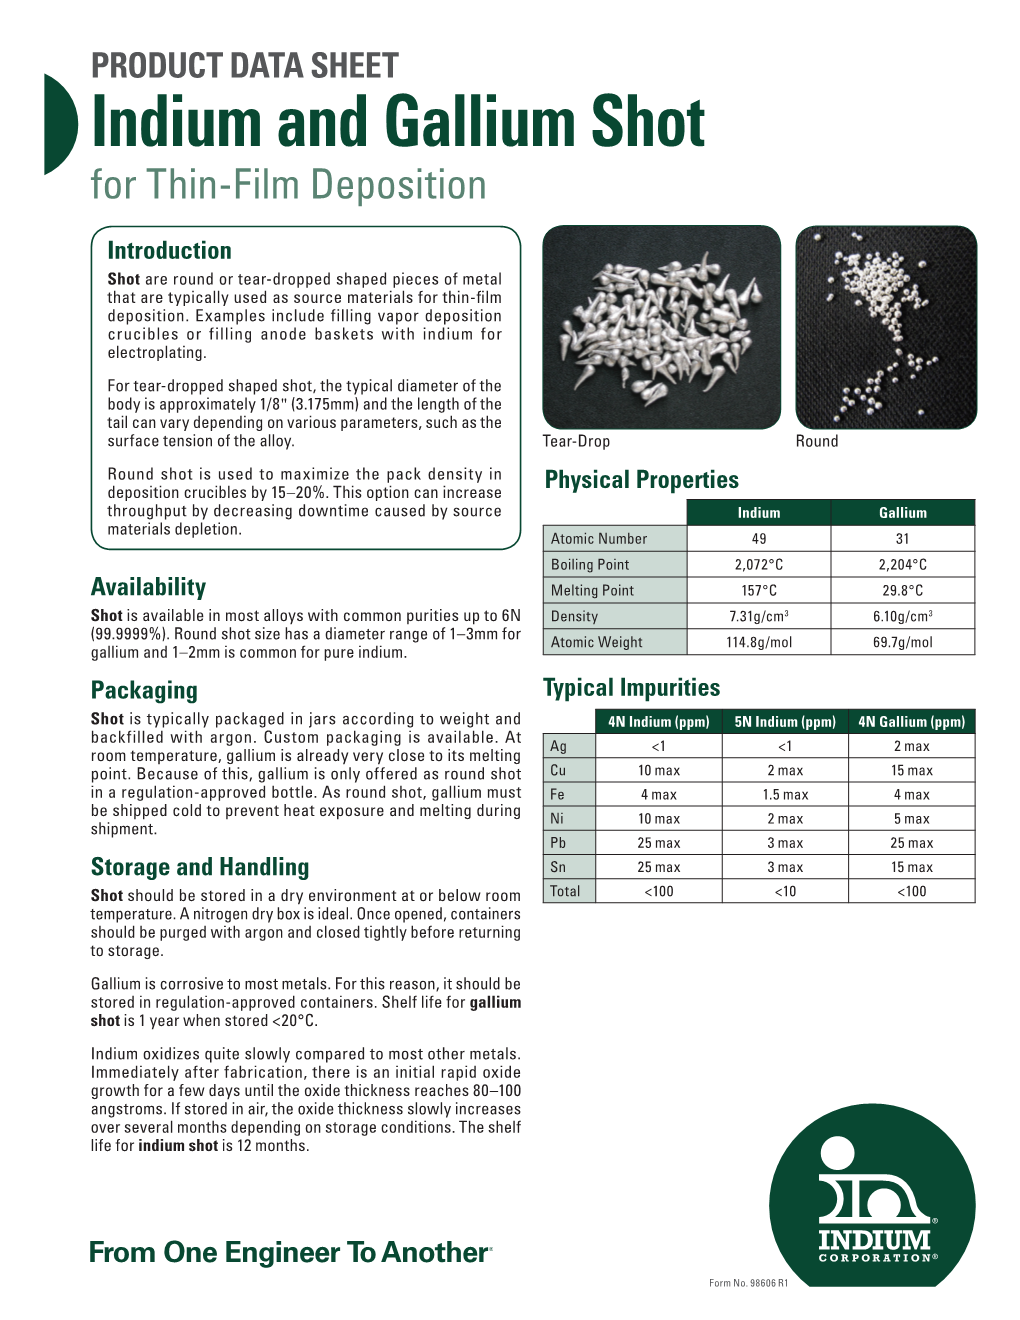 Indium and Gallium Shot for Thin-Film Deposition 98606 R1